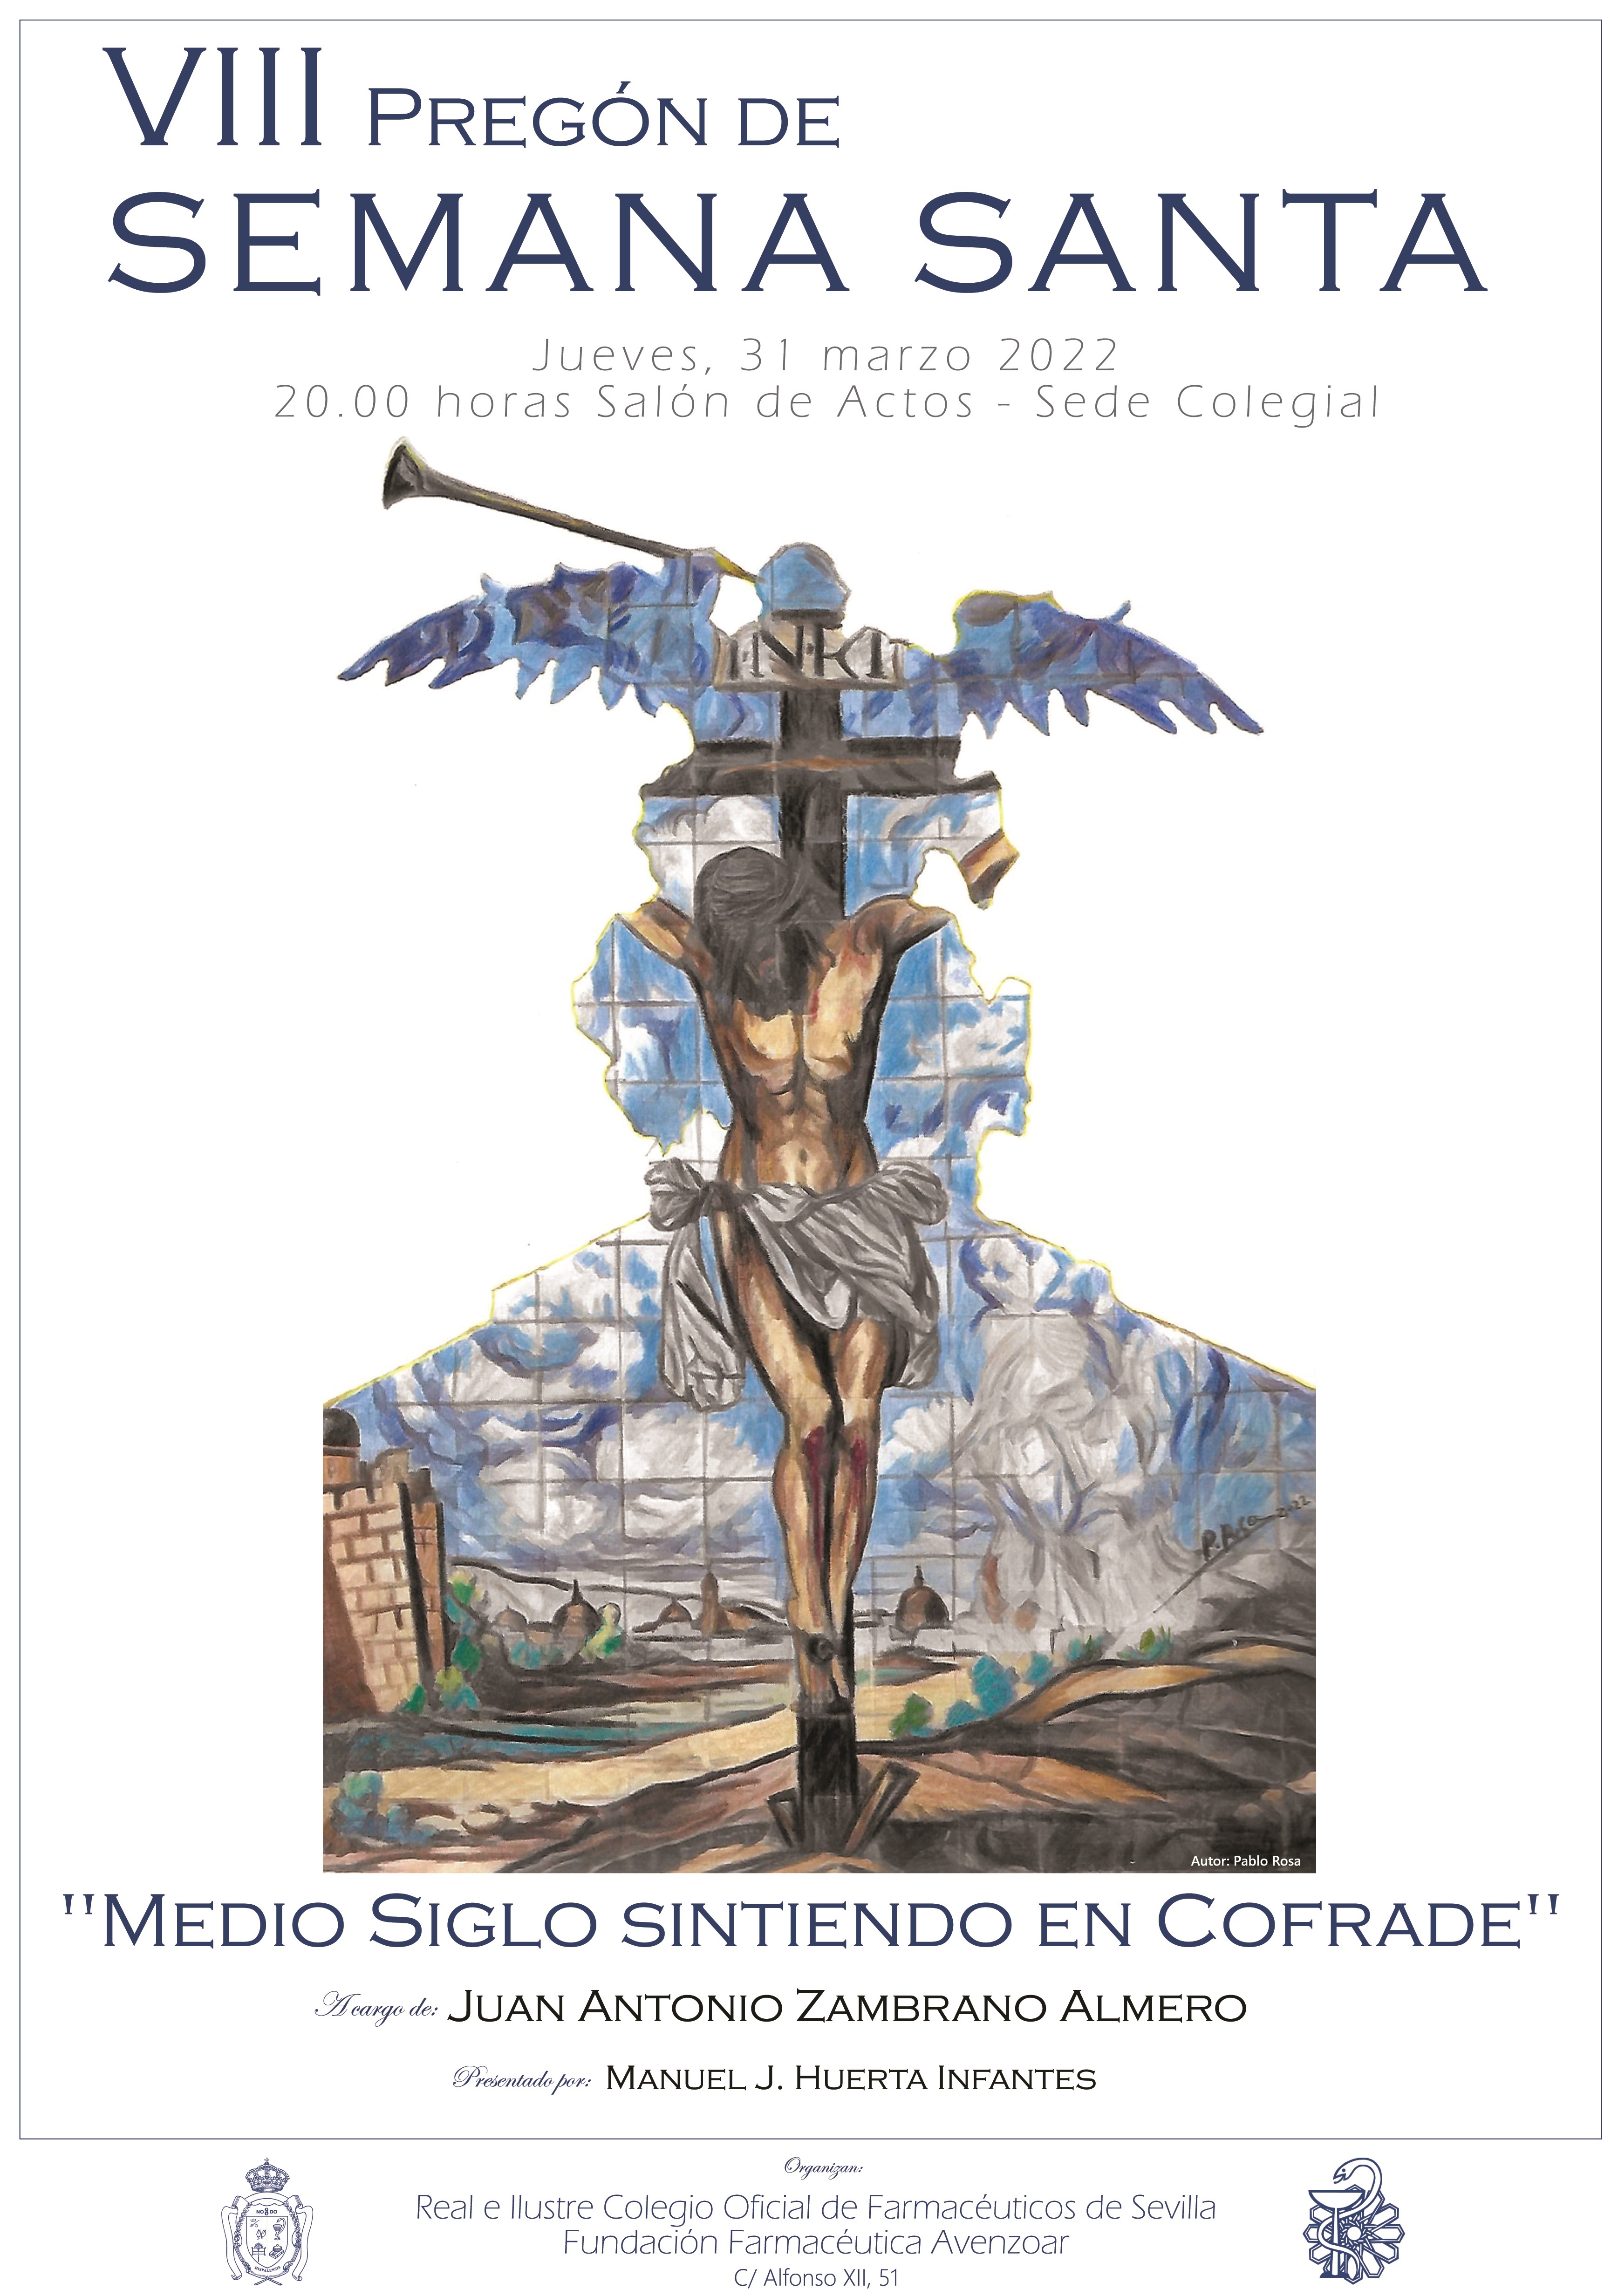 El farmacéutico Juan Antonio Zambrano Almero ofrece mañana jueves el VIII Pregón de Semana Santa del Colegio de Farmacéuticos de Sevilla